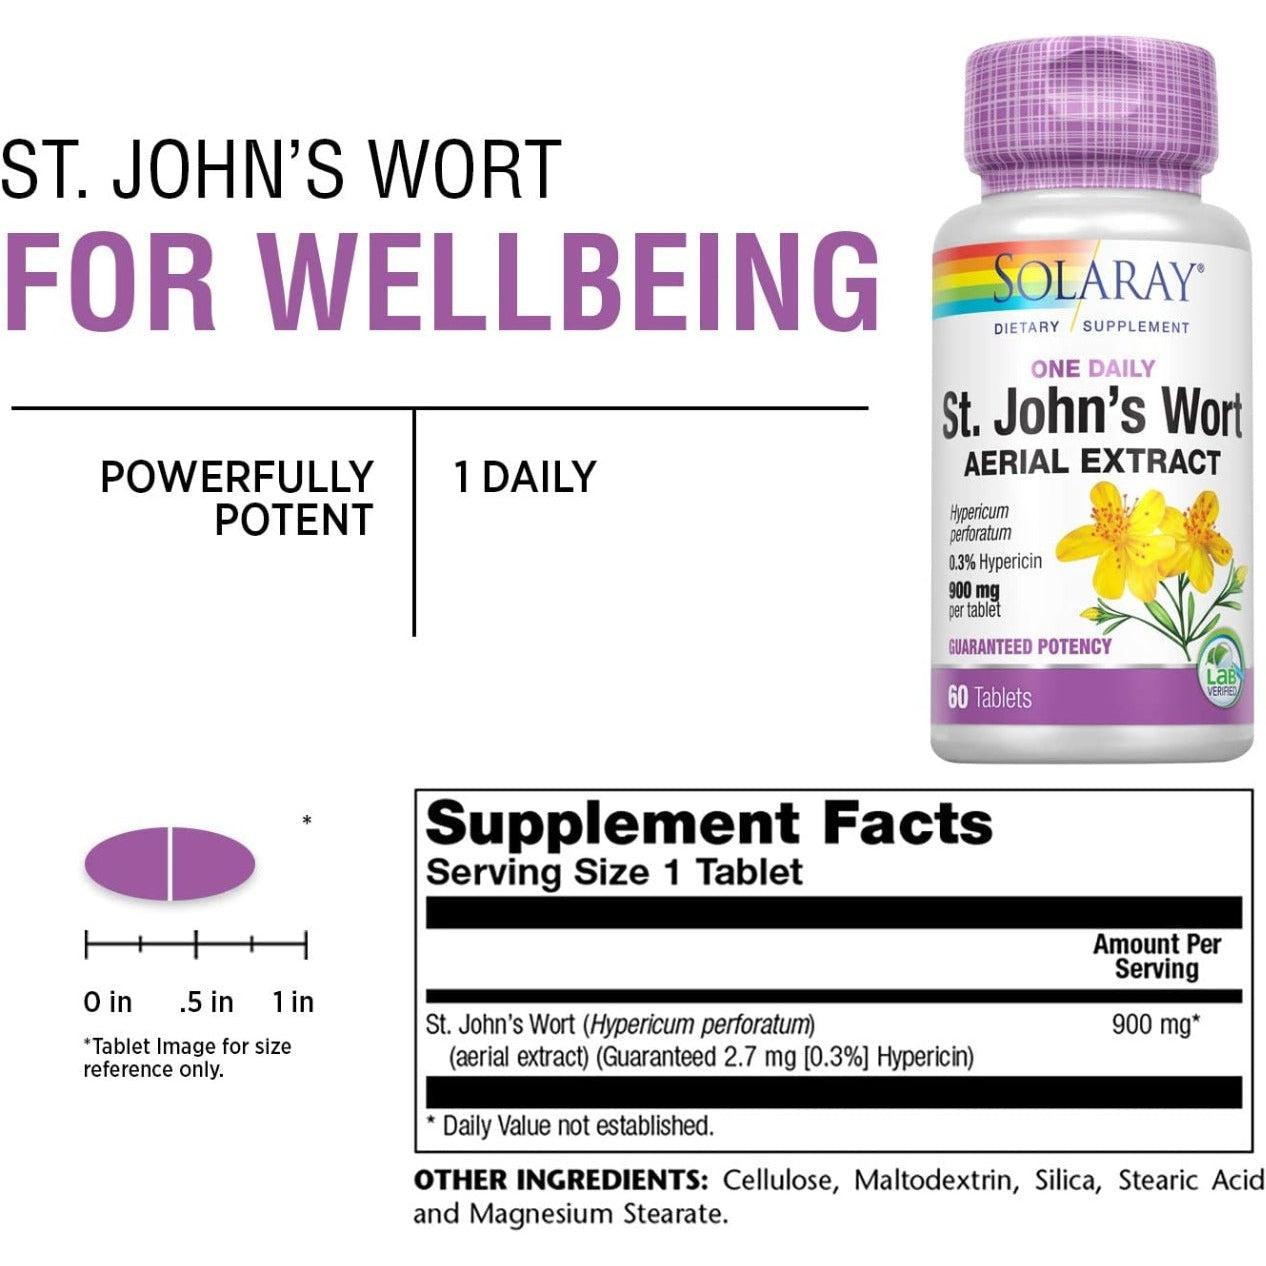 Solaray St. John's Wort Aerial Extract 0.3% Hypericin Guaranteed Potency 60 vegcaps